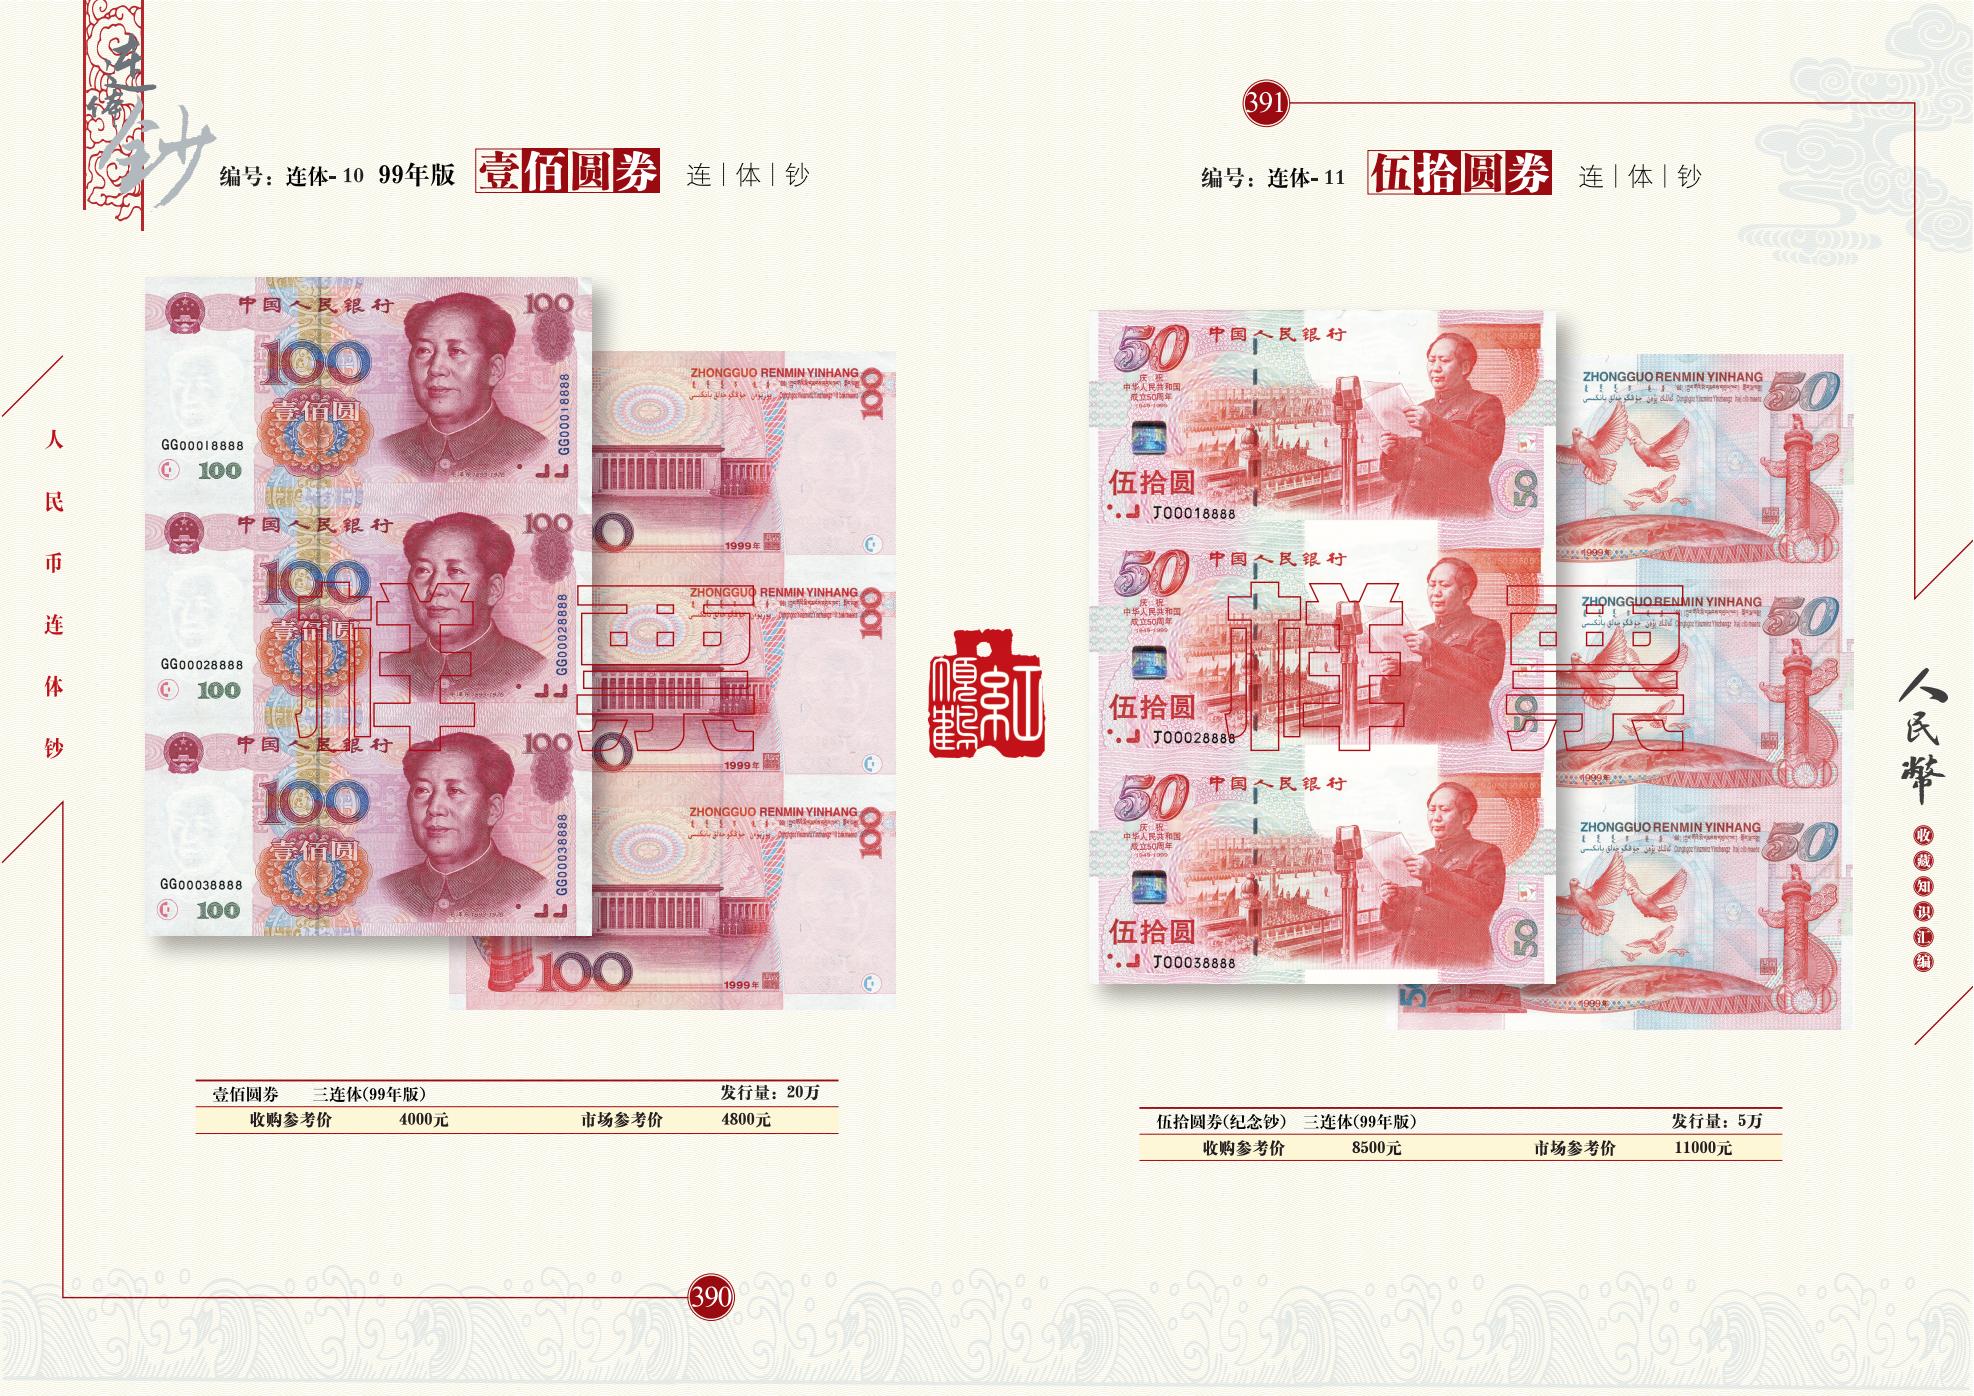 上海东邮网——邮票零售,邮票收购,邮票回收,最新邮票价格行情,邮票零售网站,上门收购邮票,上门回收邮票